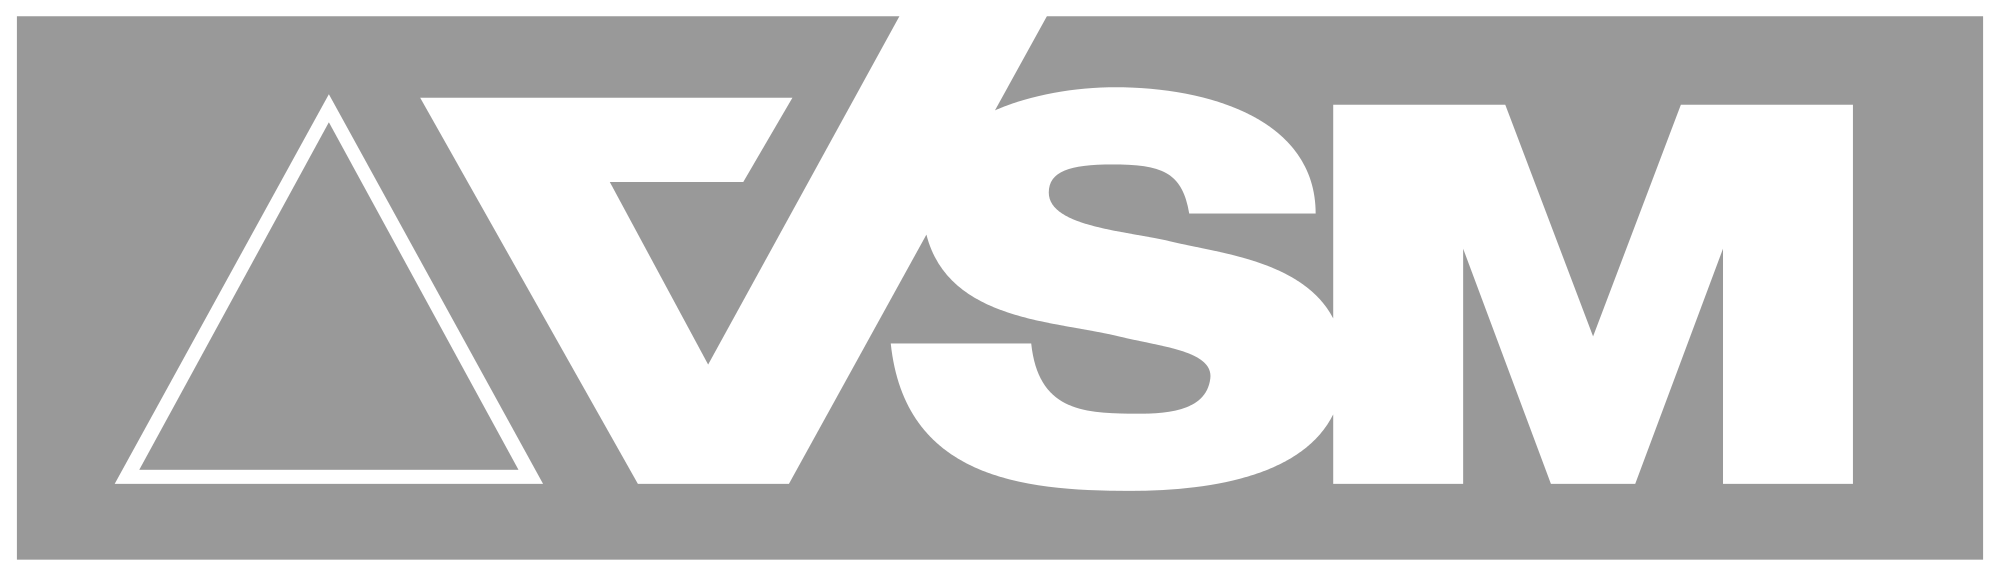 VSM Logo - File:VSM Vereinigte Schmirgel- und Maschinen-Fabriken logo.svg ...